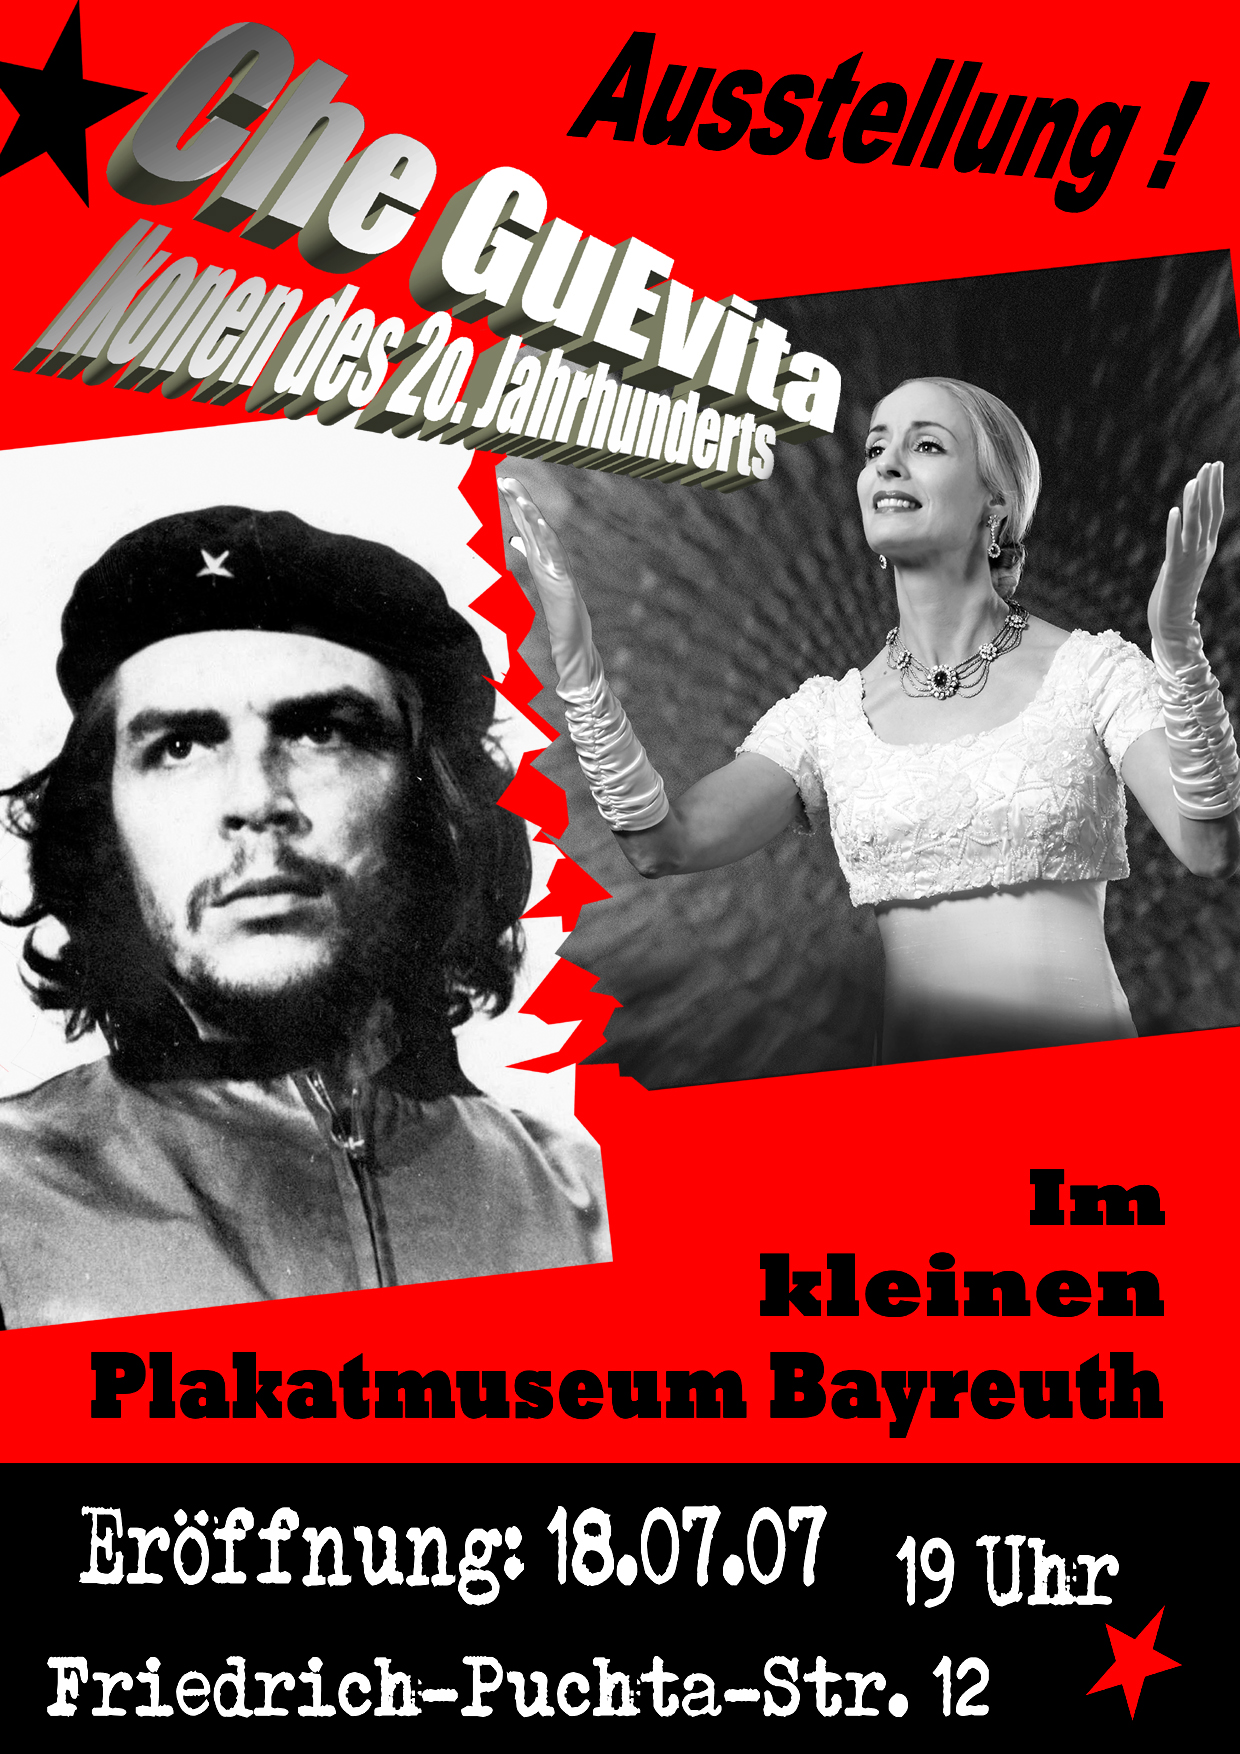 Plakat Ausstellung Che Guevara